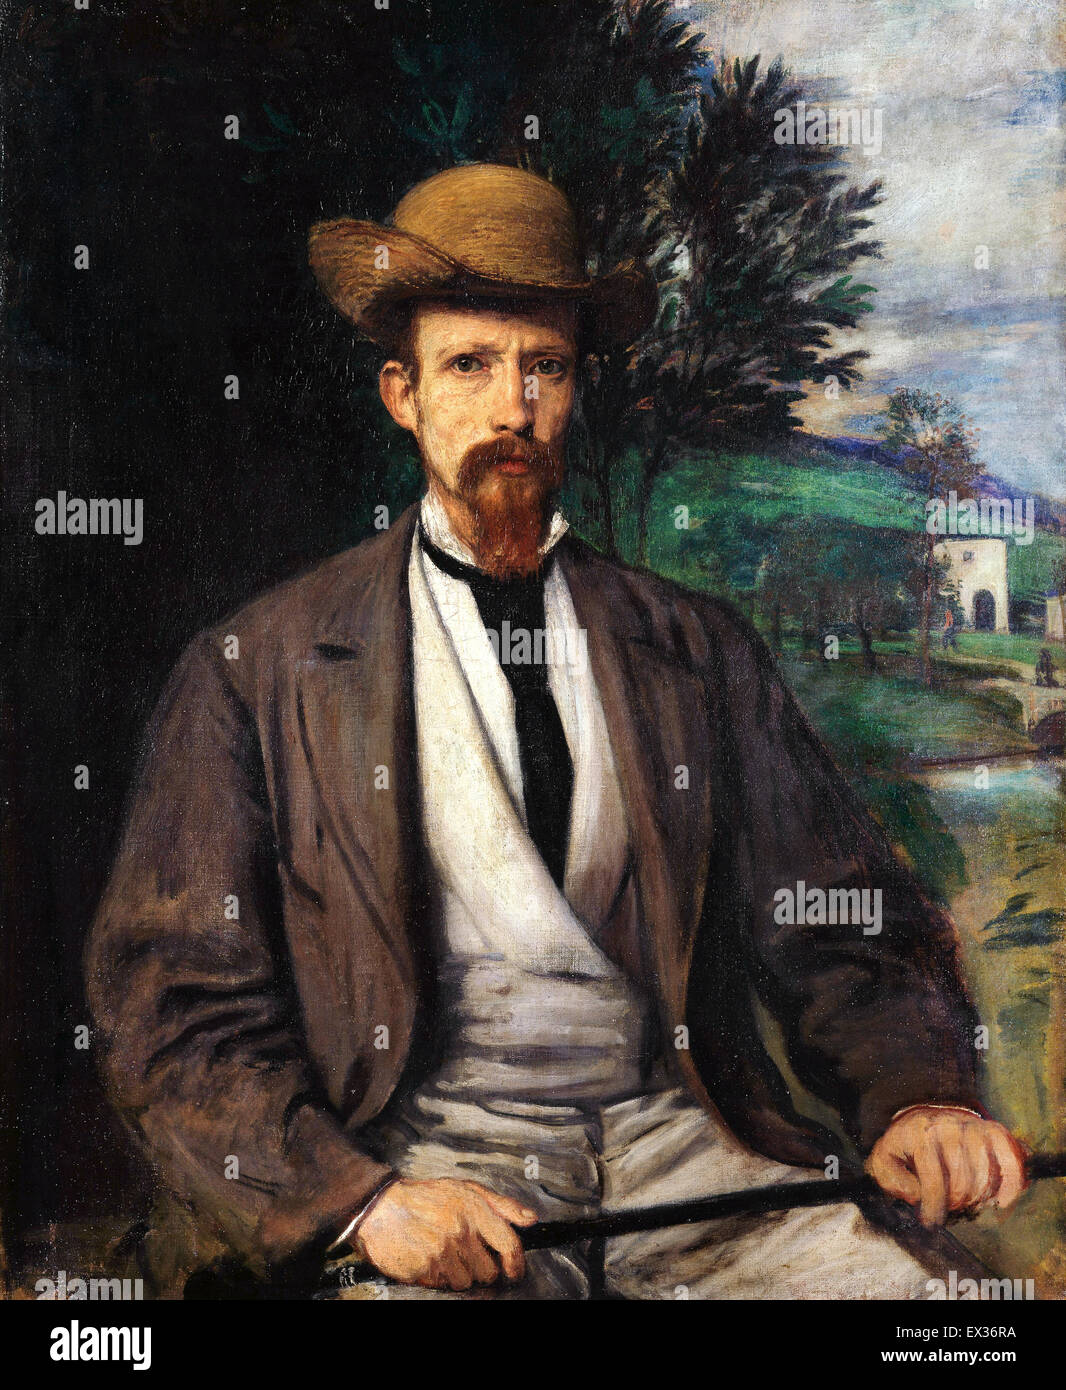 Hans von Marees, Autoportrait avec chapeau jaune 1874 Huile sur toile. L'Alte Nationalgalerie, Berlin, Allemagne. Banque D'Images